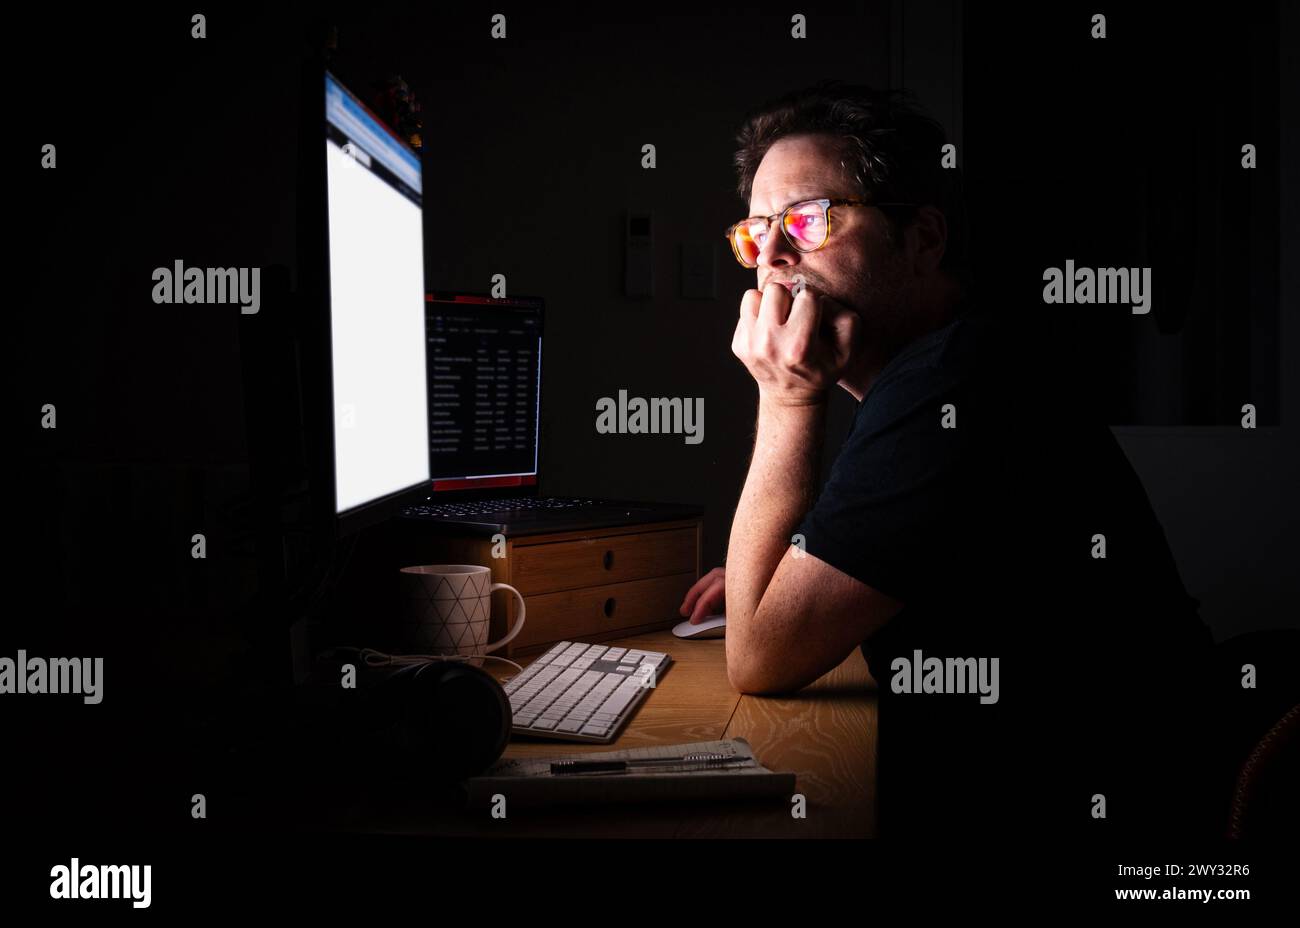 Professionelle Person, die nachts am Computer arbeitet Stockfoto